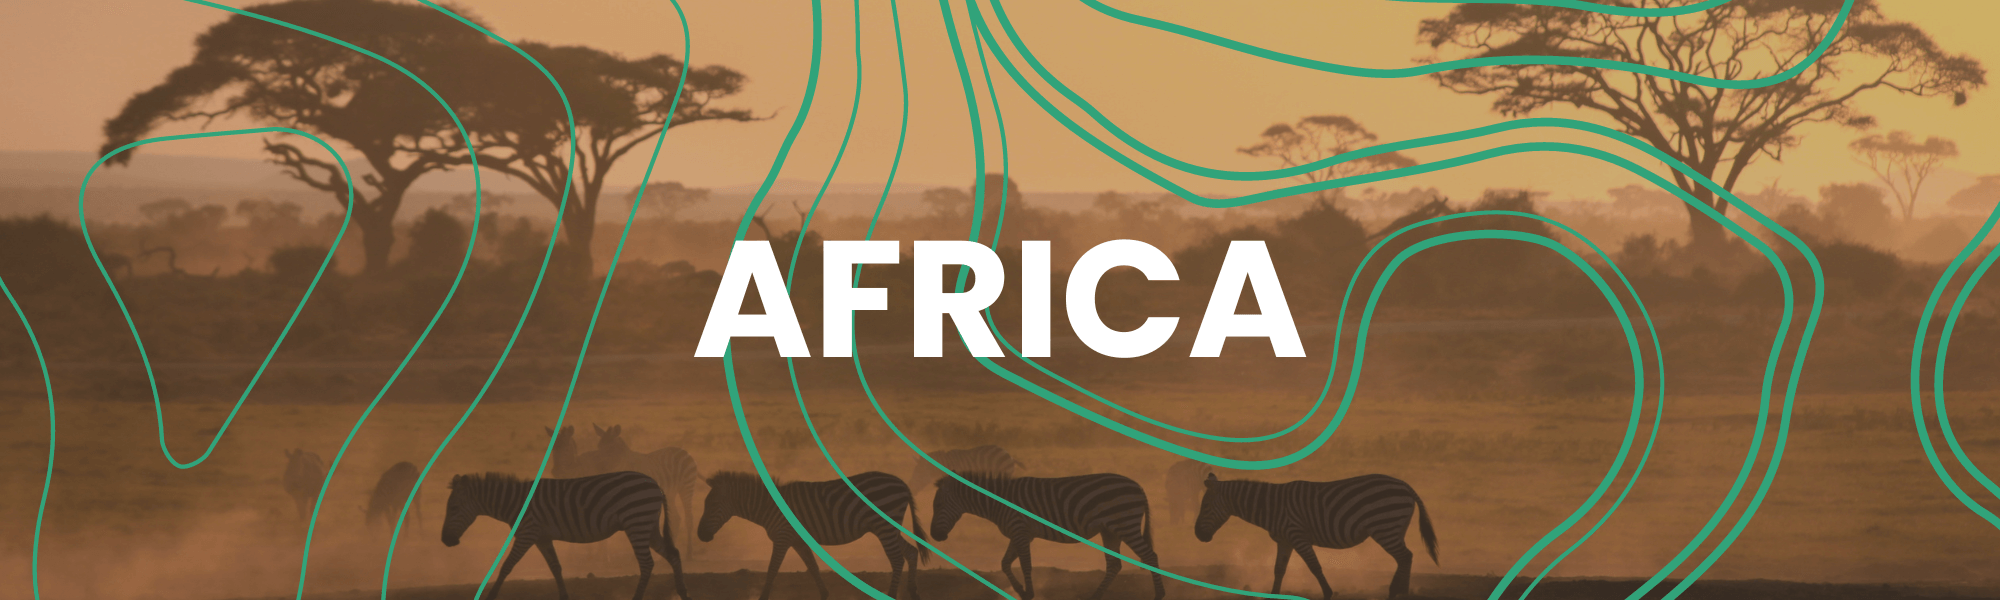 Africa Trip Itinerary Hero Image